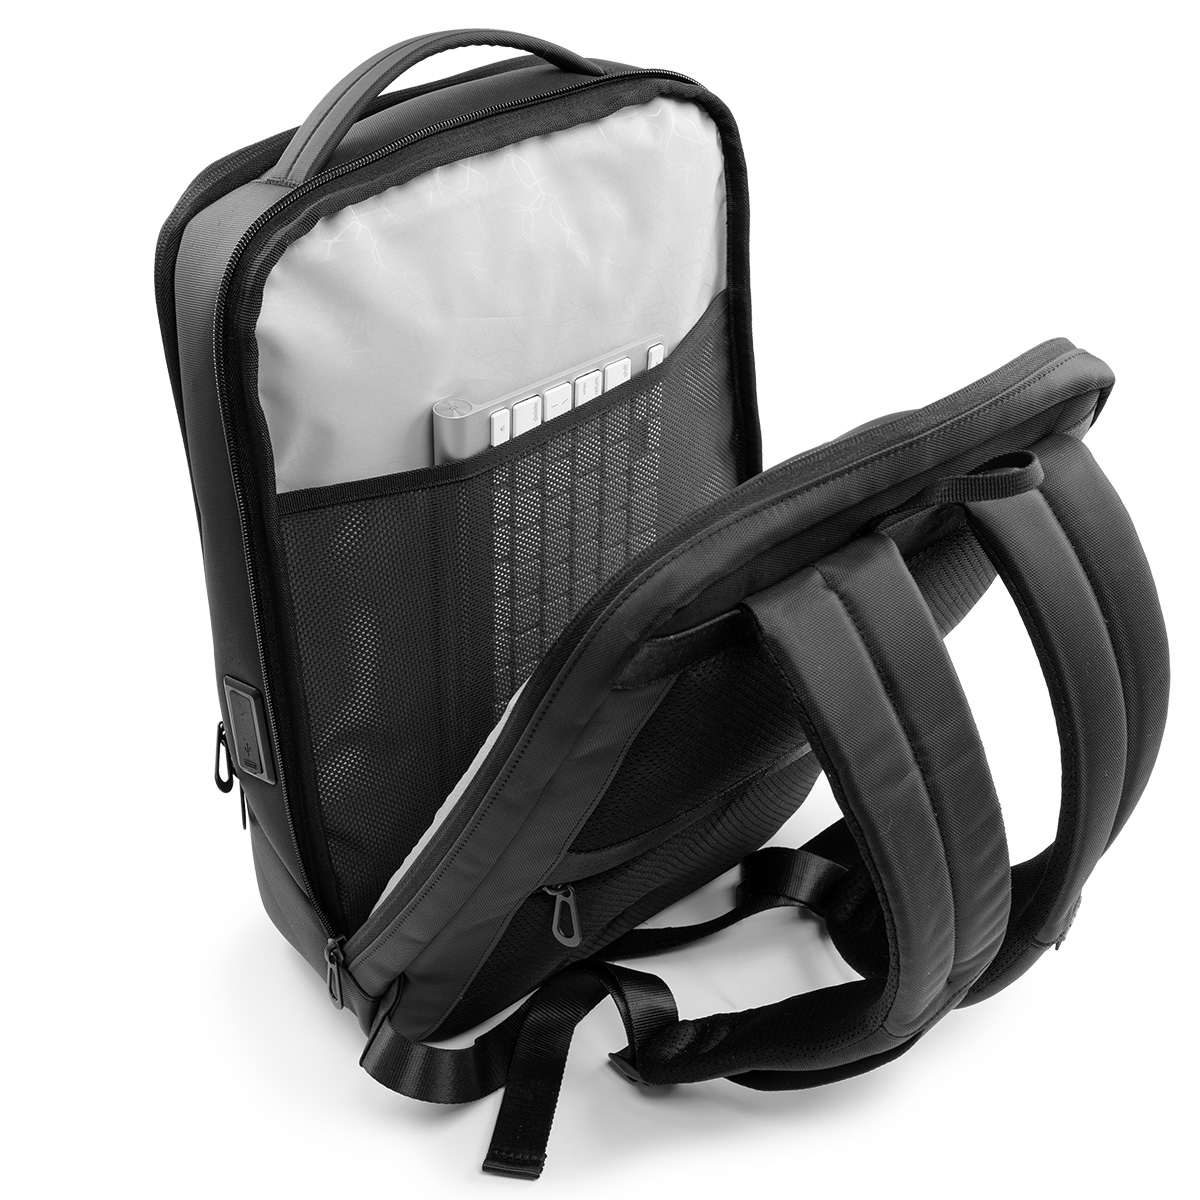 Balo laptop 15” KINGBAG APOLLO thời trang, tích hợp cổng USB đa dụng, ngăn phụ lót chống thấm, màu đen - Hàng chính hãng